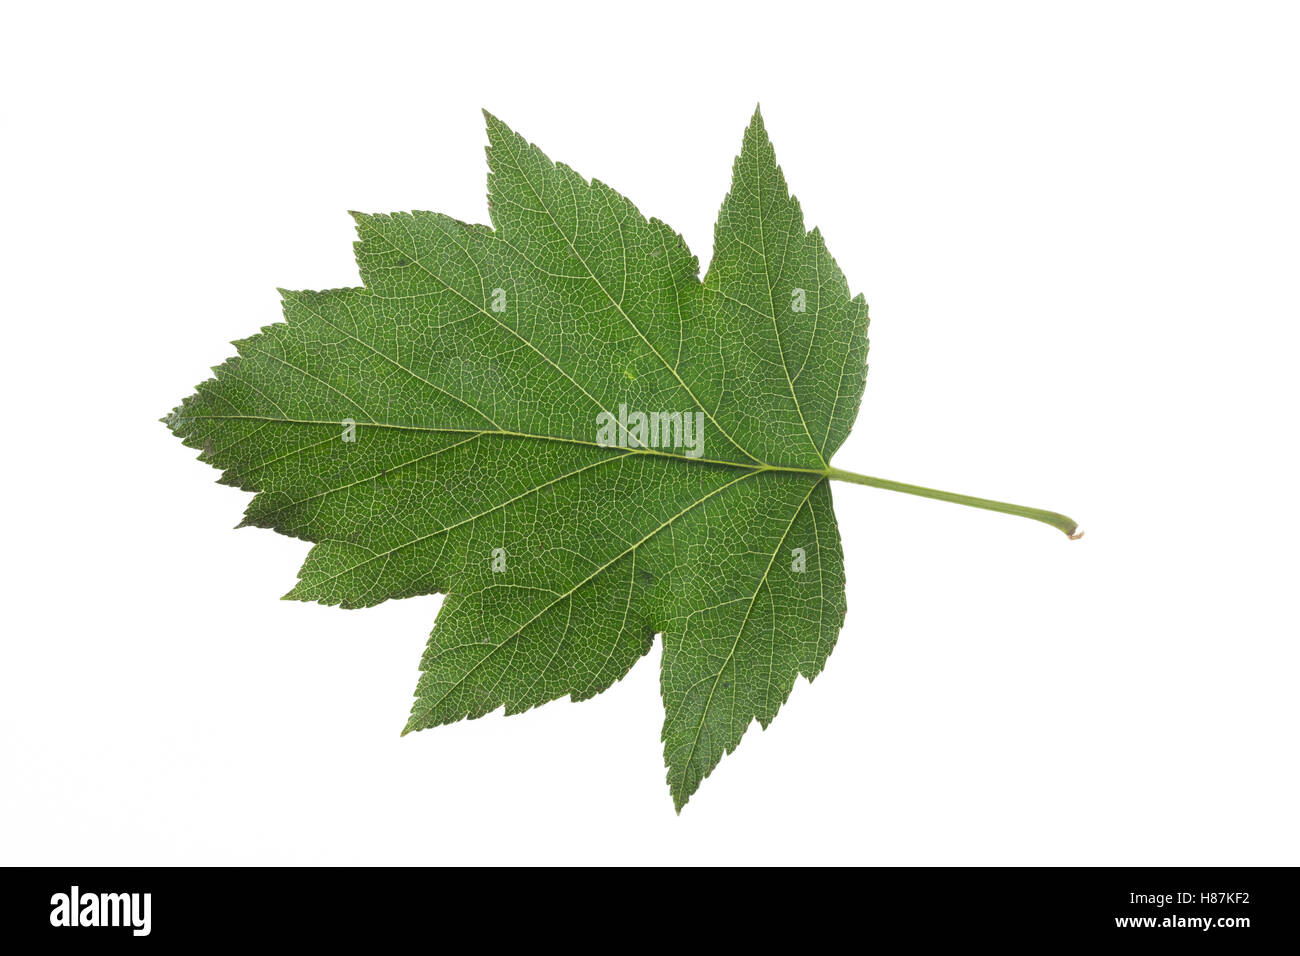 Elsbeere, Elzbeere, Sorbus torminalis, Wild Service Tree, Alisier torminal. Blatt, Blätter, leaf, leaves Stock Photo